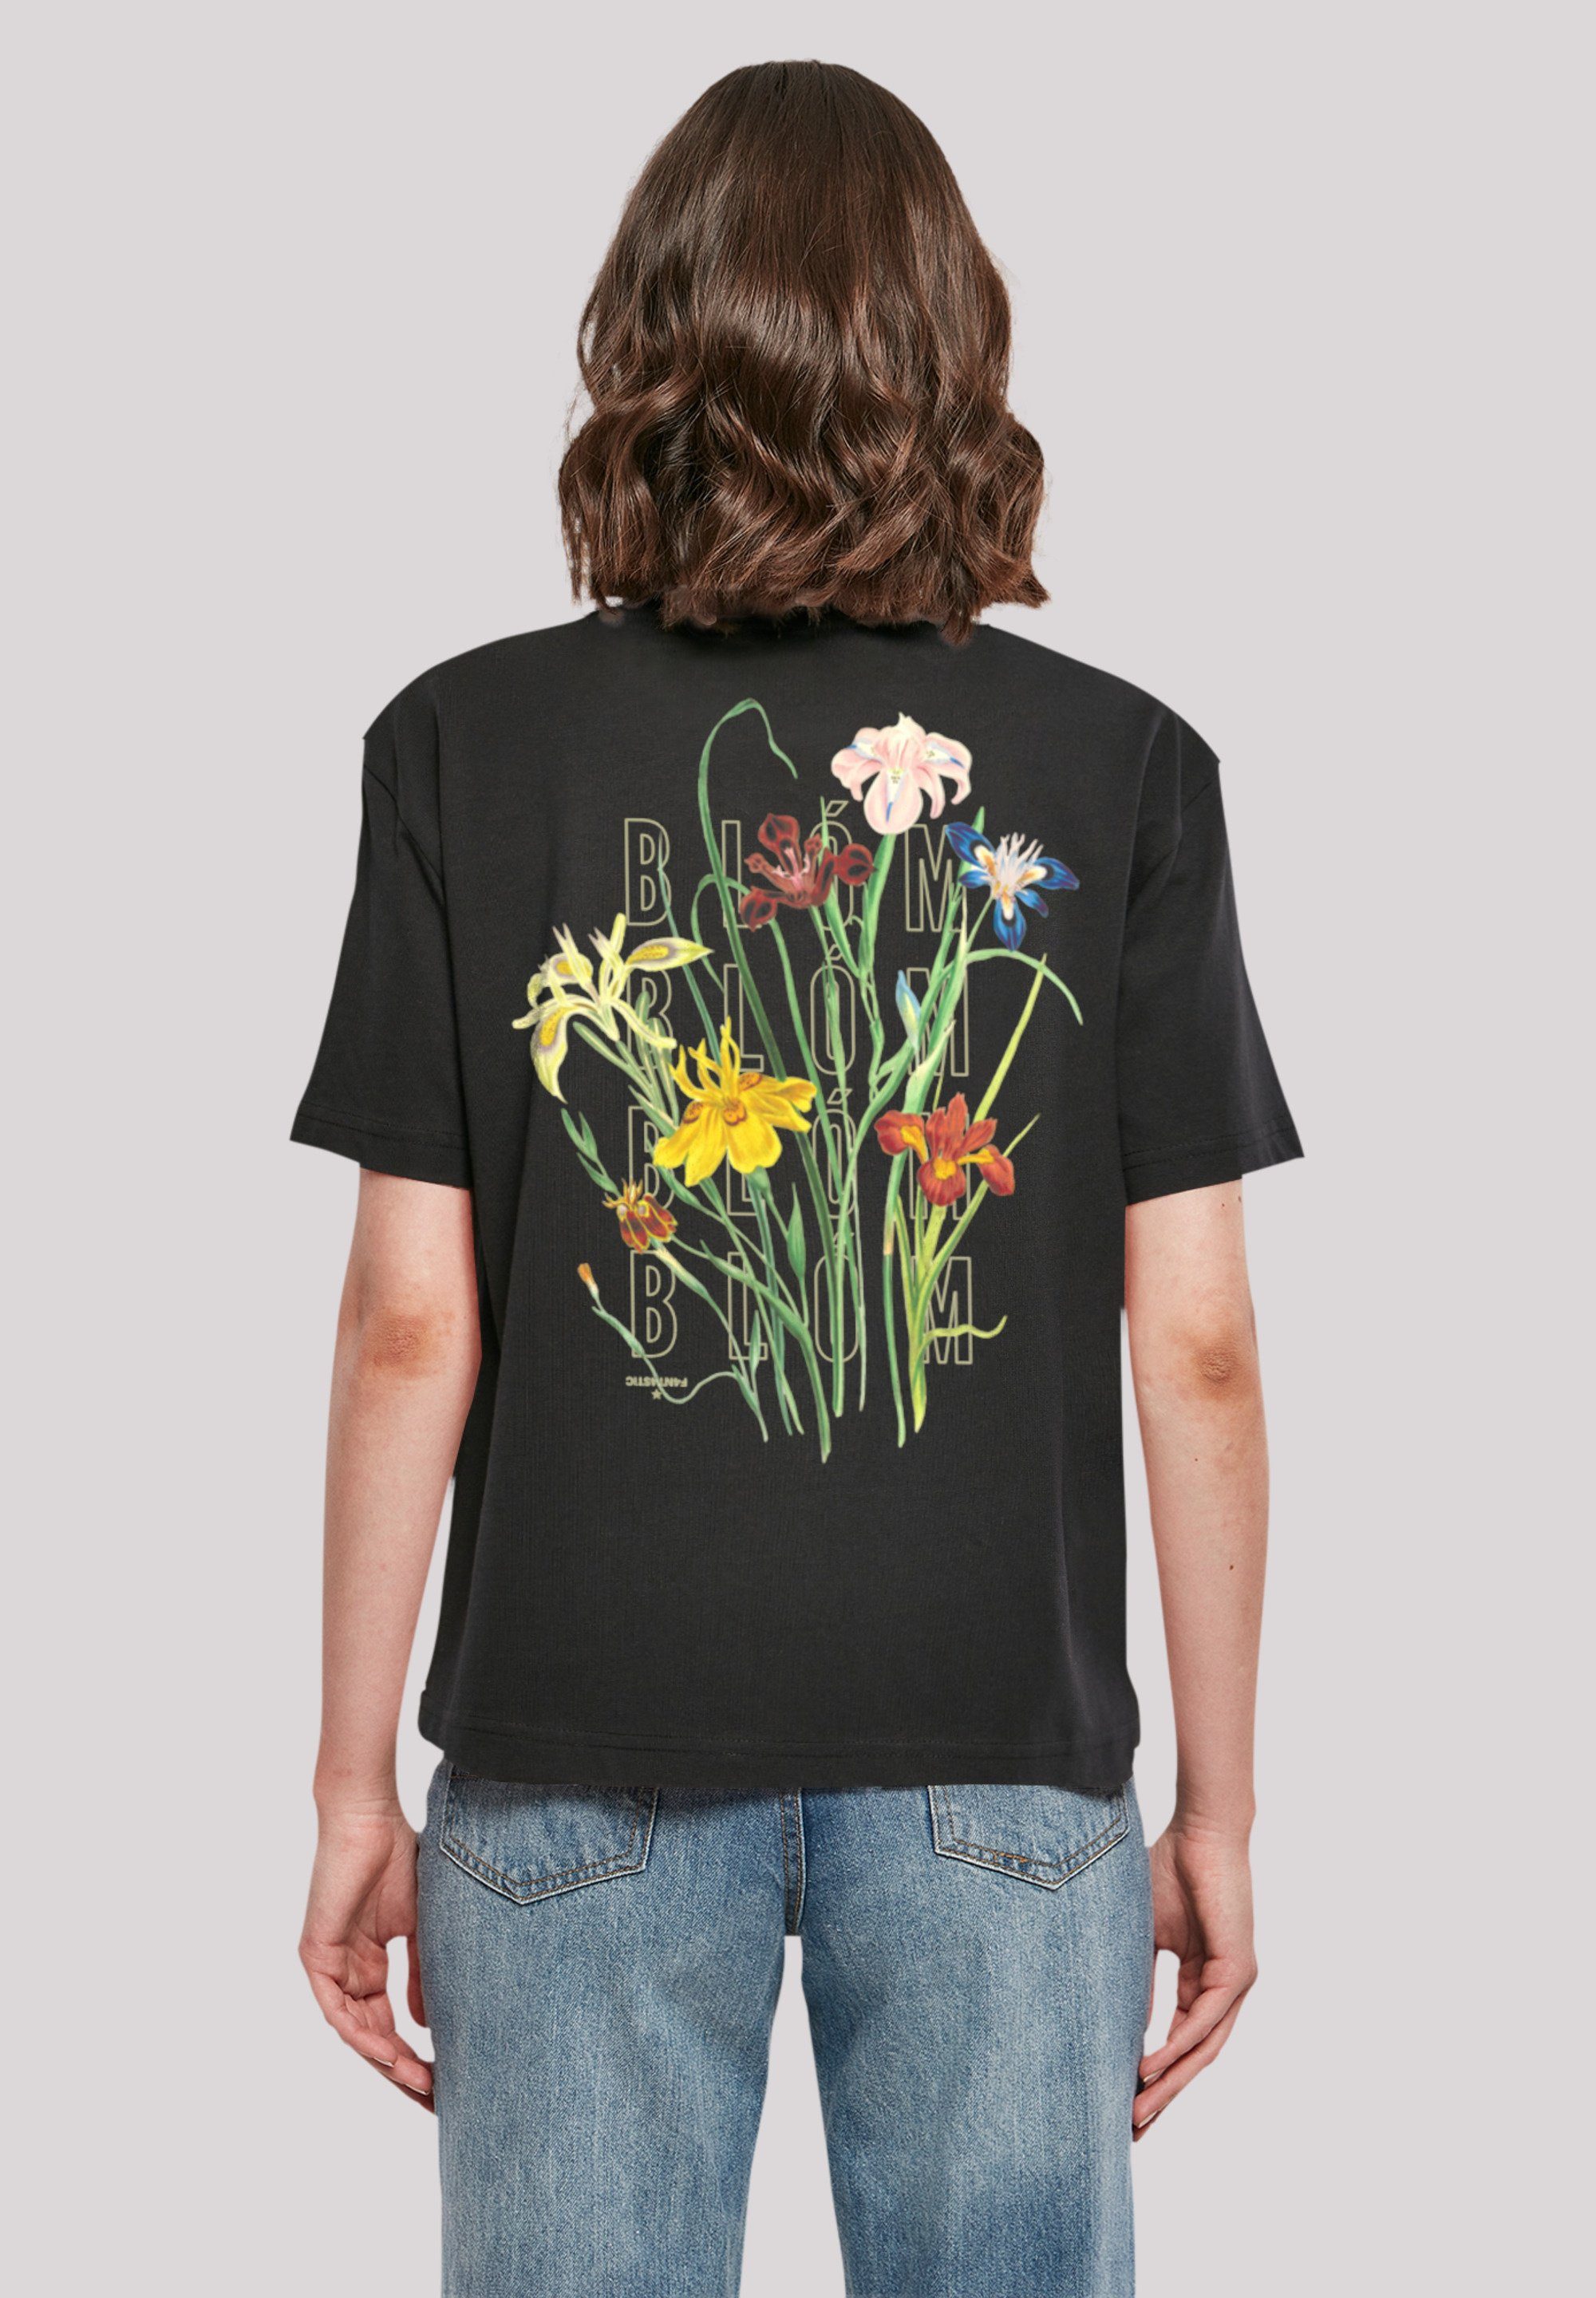 F4NT4STIC T-Shirt Blóm stylischen Look Gerippter Print, Rundhalsausschnitt für Blumenstrauss